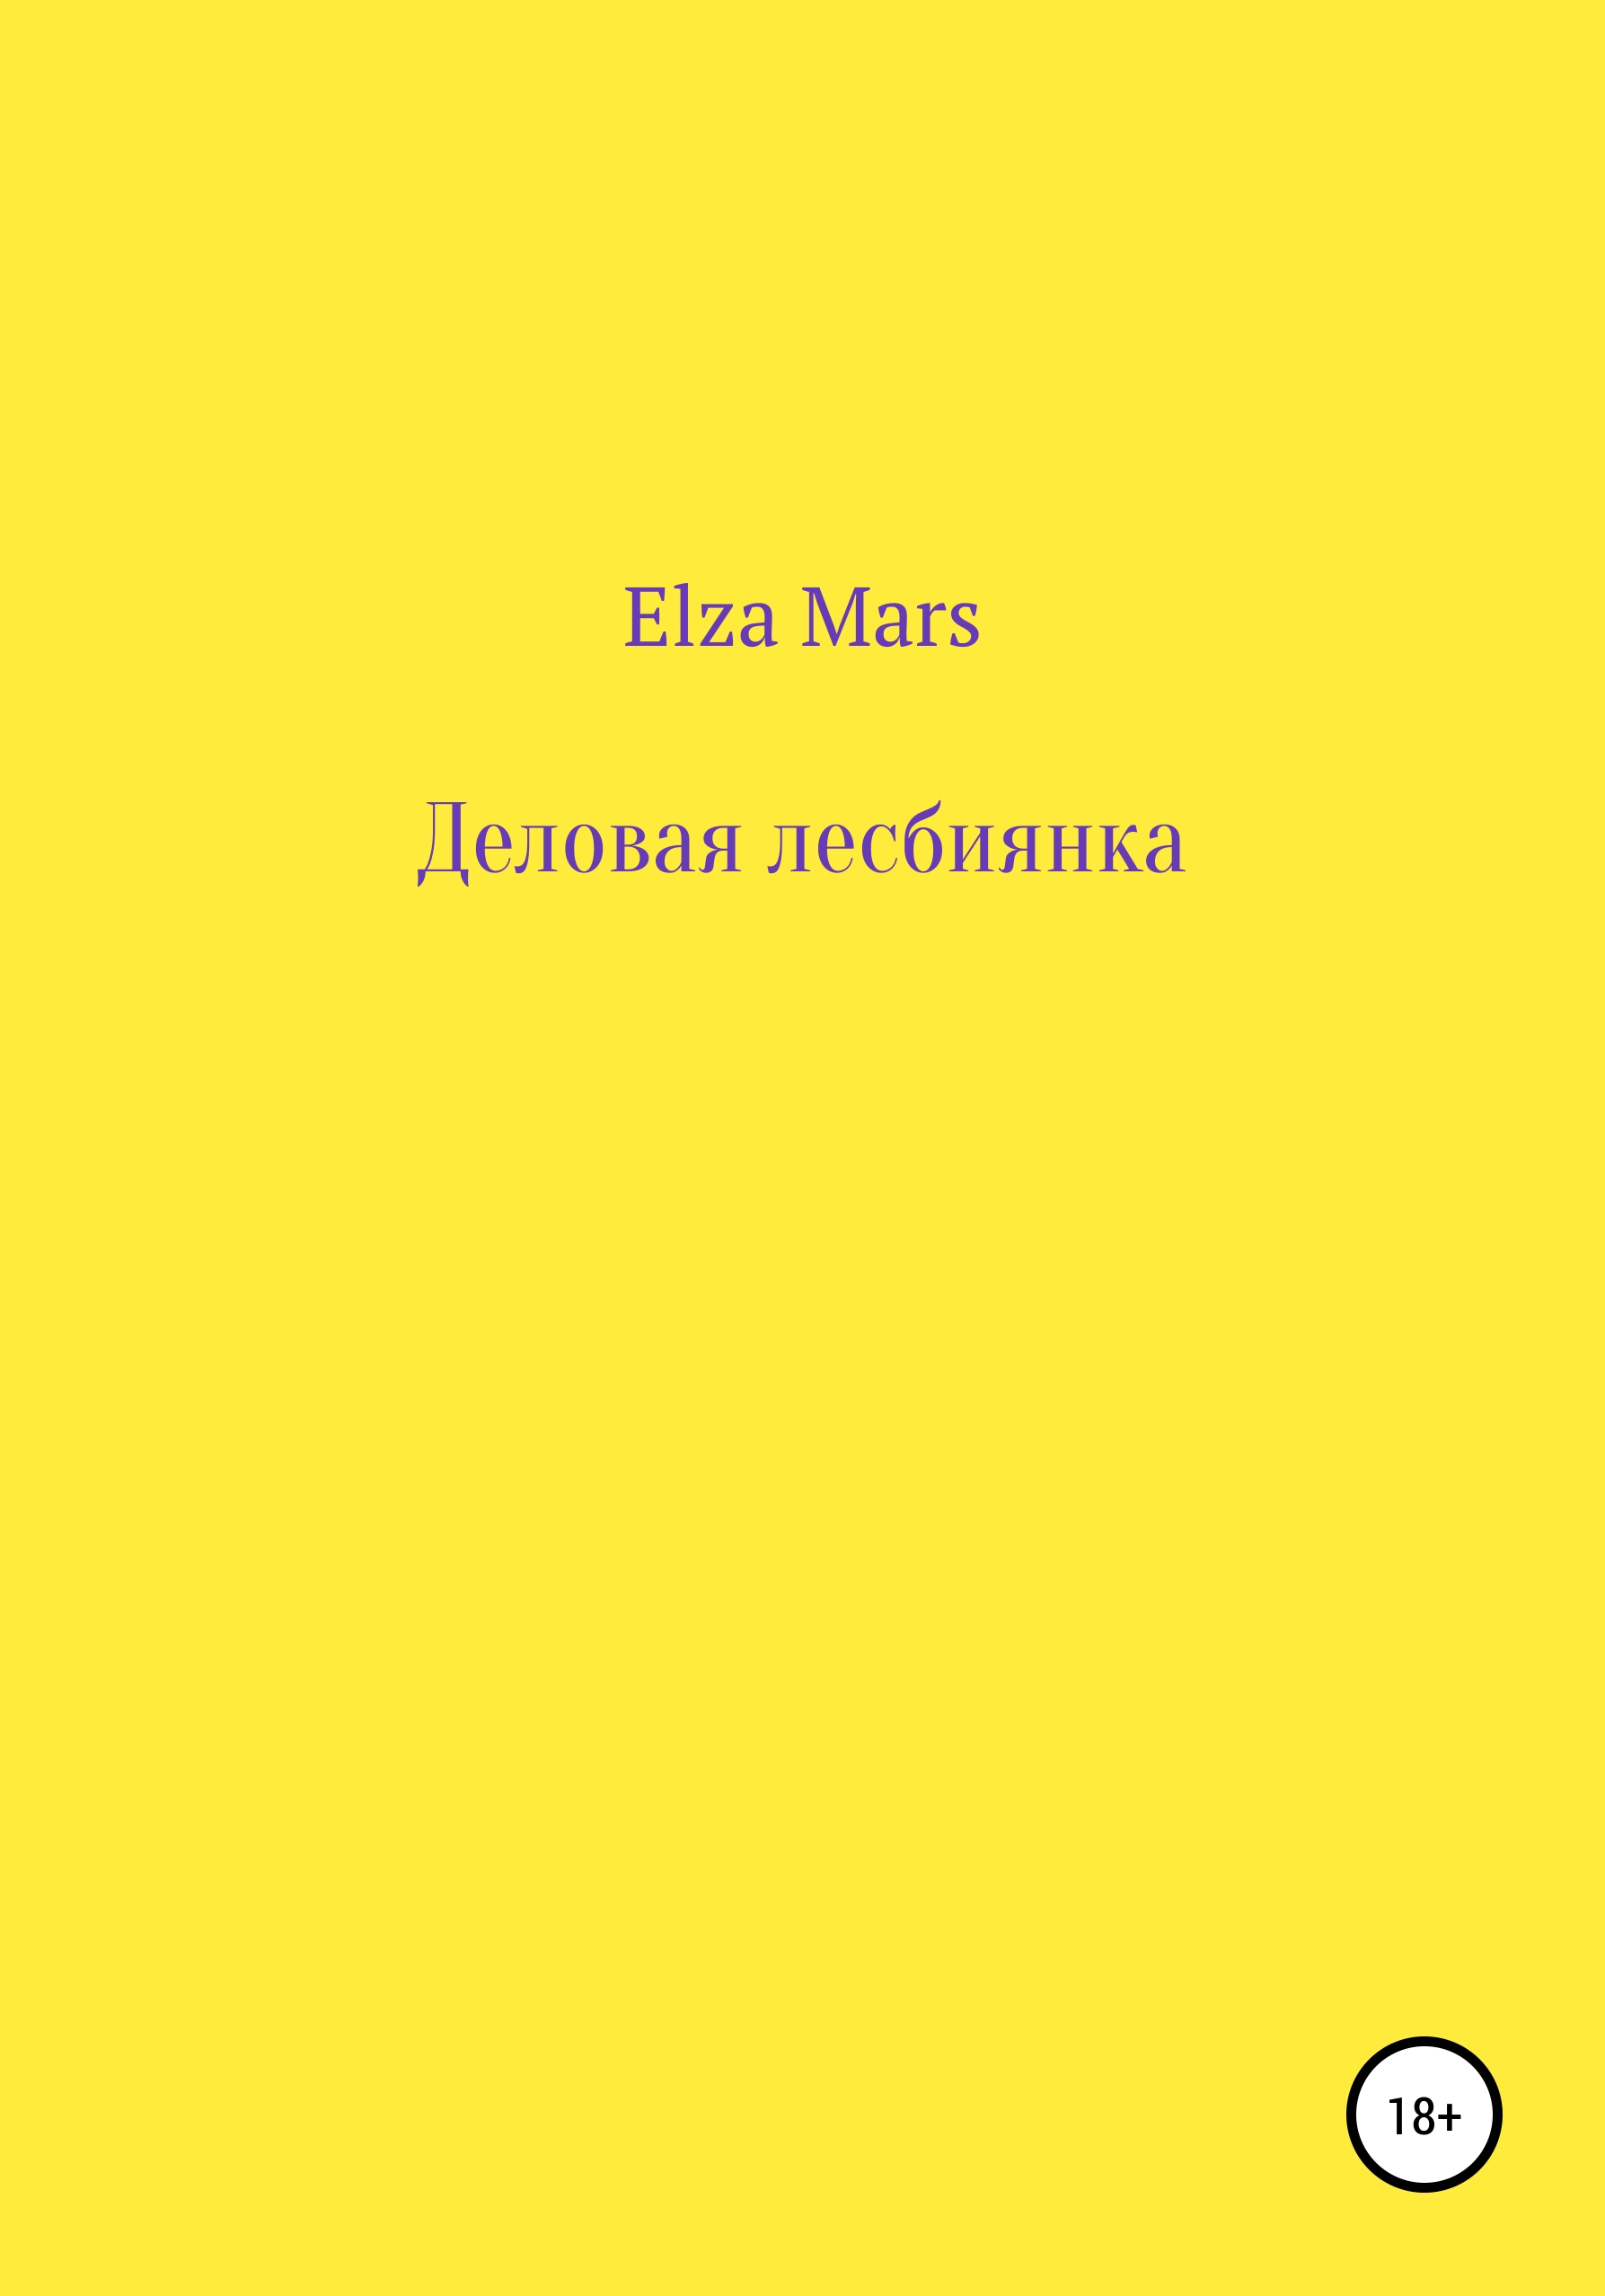 Деловая лесбиянка, , Elza Mars – скачать книгу бесплатно fb2, epub, pdf на ЛитРес